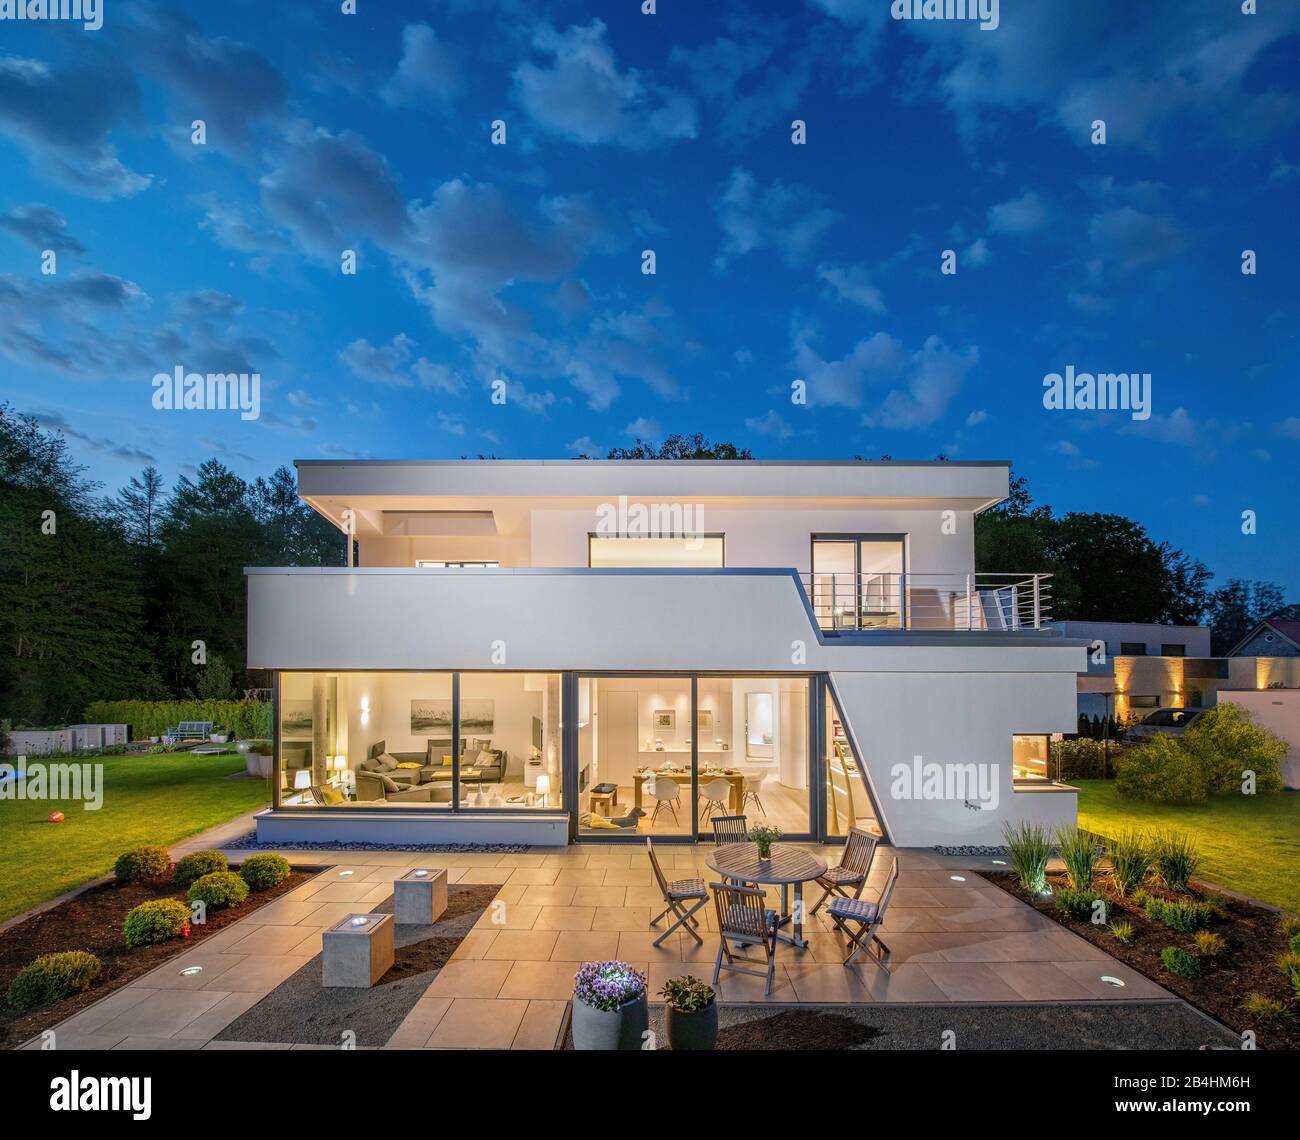 Abendstimmung eines modernes Einfamilienhauses mit Garten, Neubau, Architektur Stock Photo